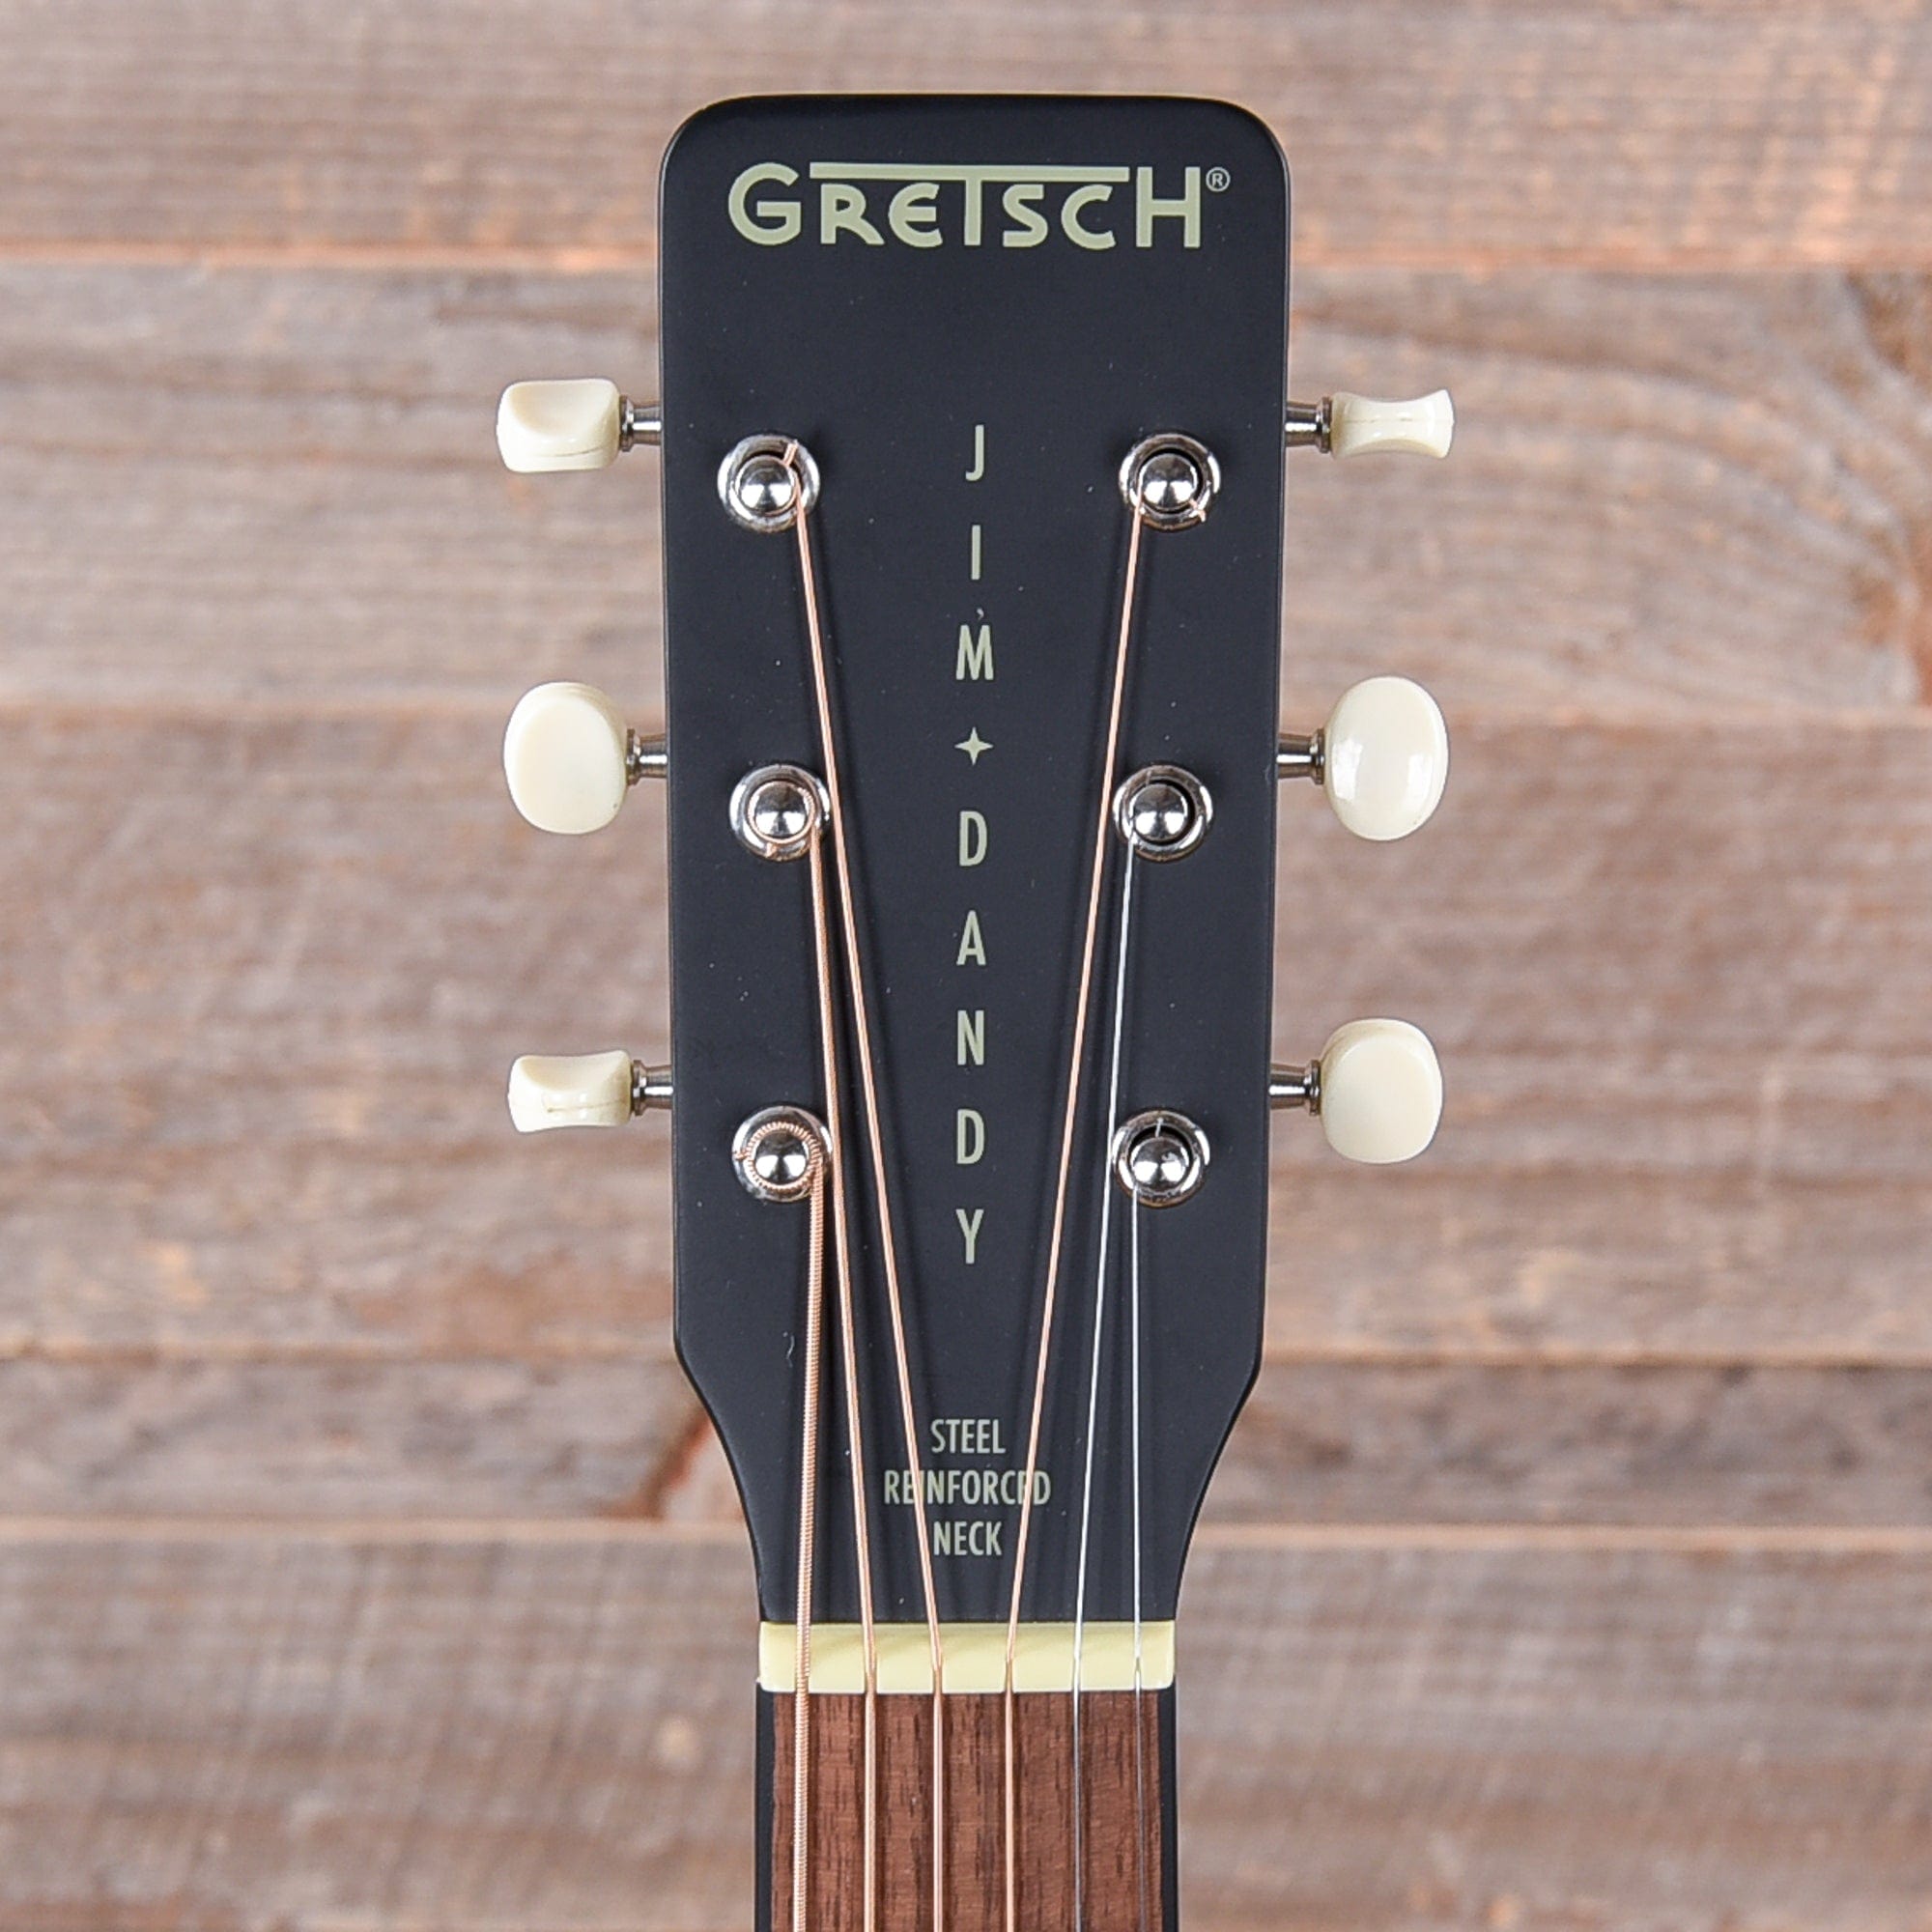 Gretsch Jim Dandy Flat Top Acoustic - 2 Tone Sunburst Acoustic Guitars / Parlor